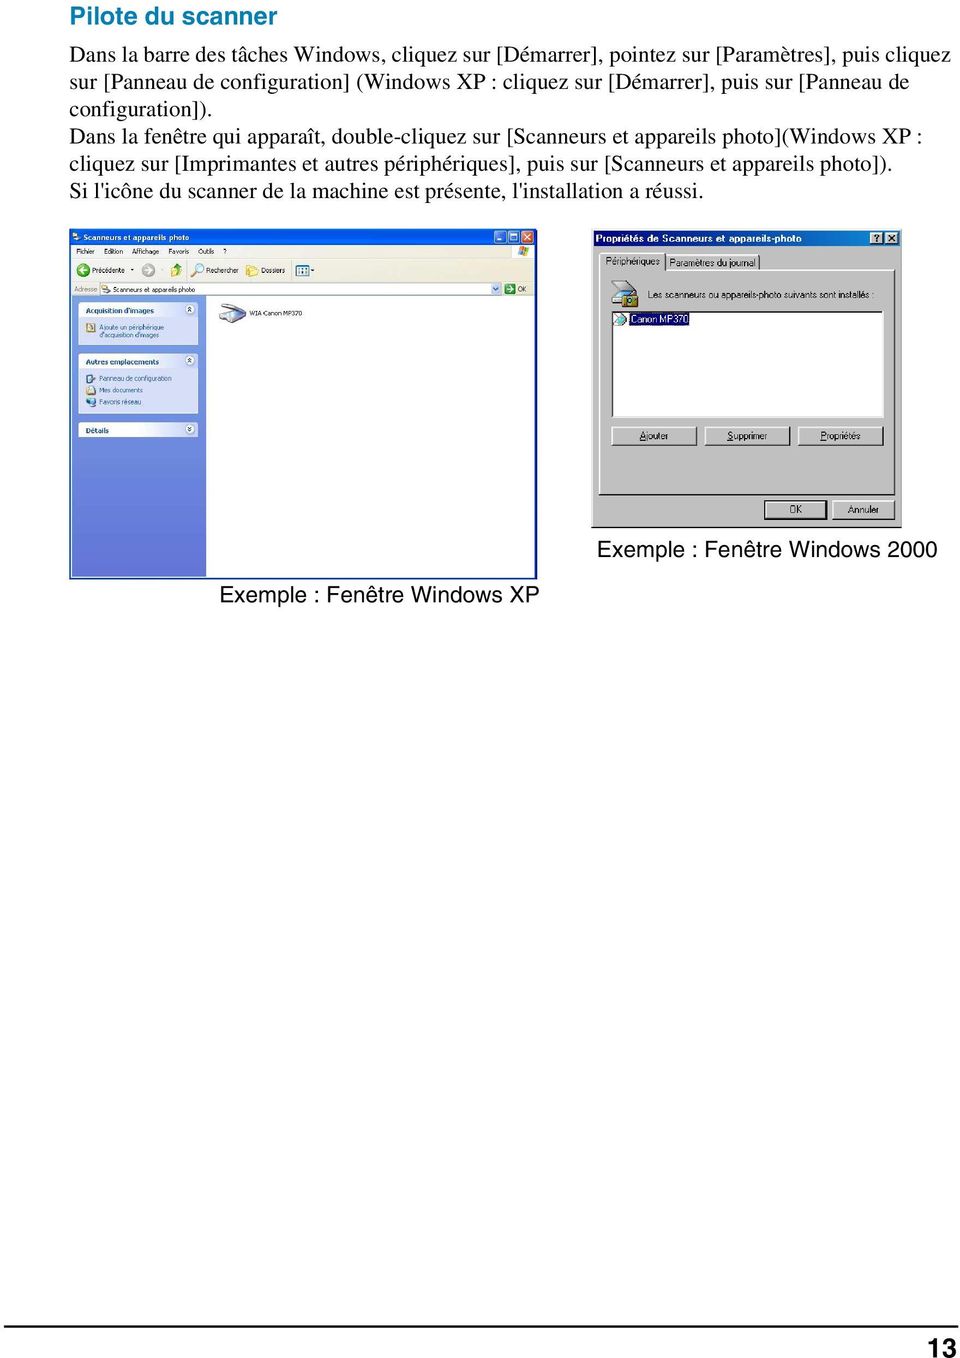 Dans la fenêtre qui apparaît, double-cliquez sur [Scanneurs et appareils photo](windows XP : cliquez sur [Imprimantes et autres